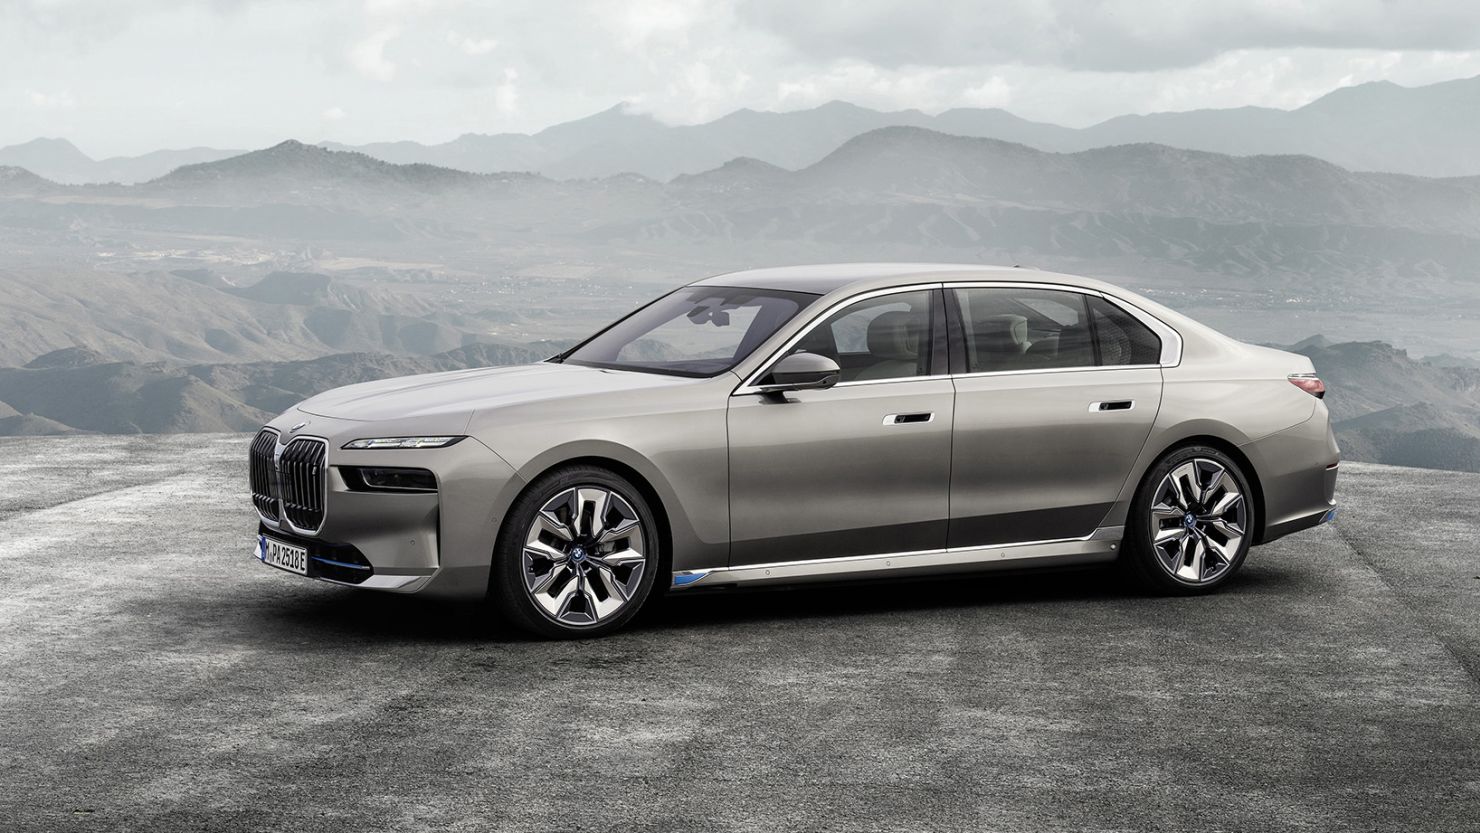 BMW i7 electric car revealed